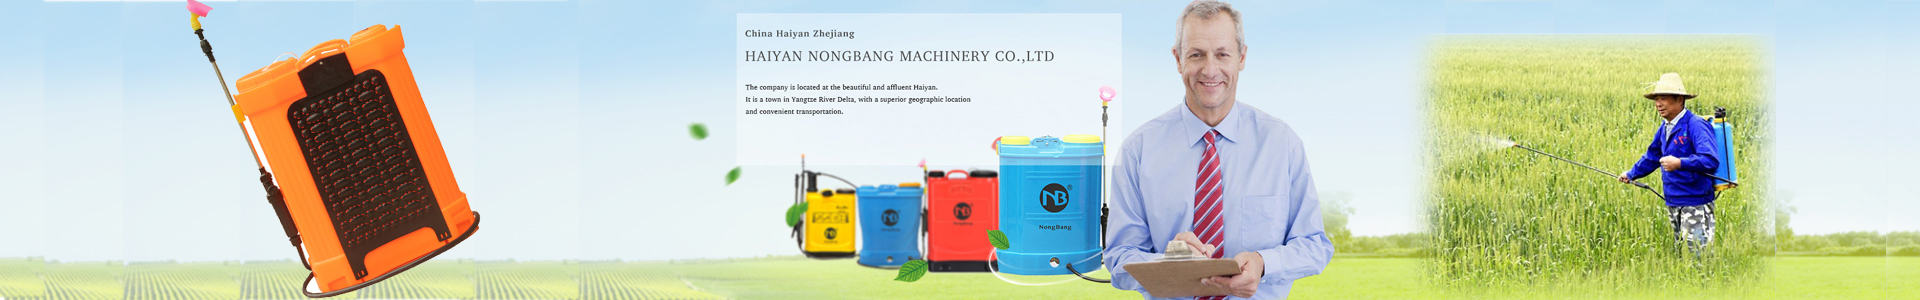 Haiyan Nongbang Machinery Limited Company